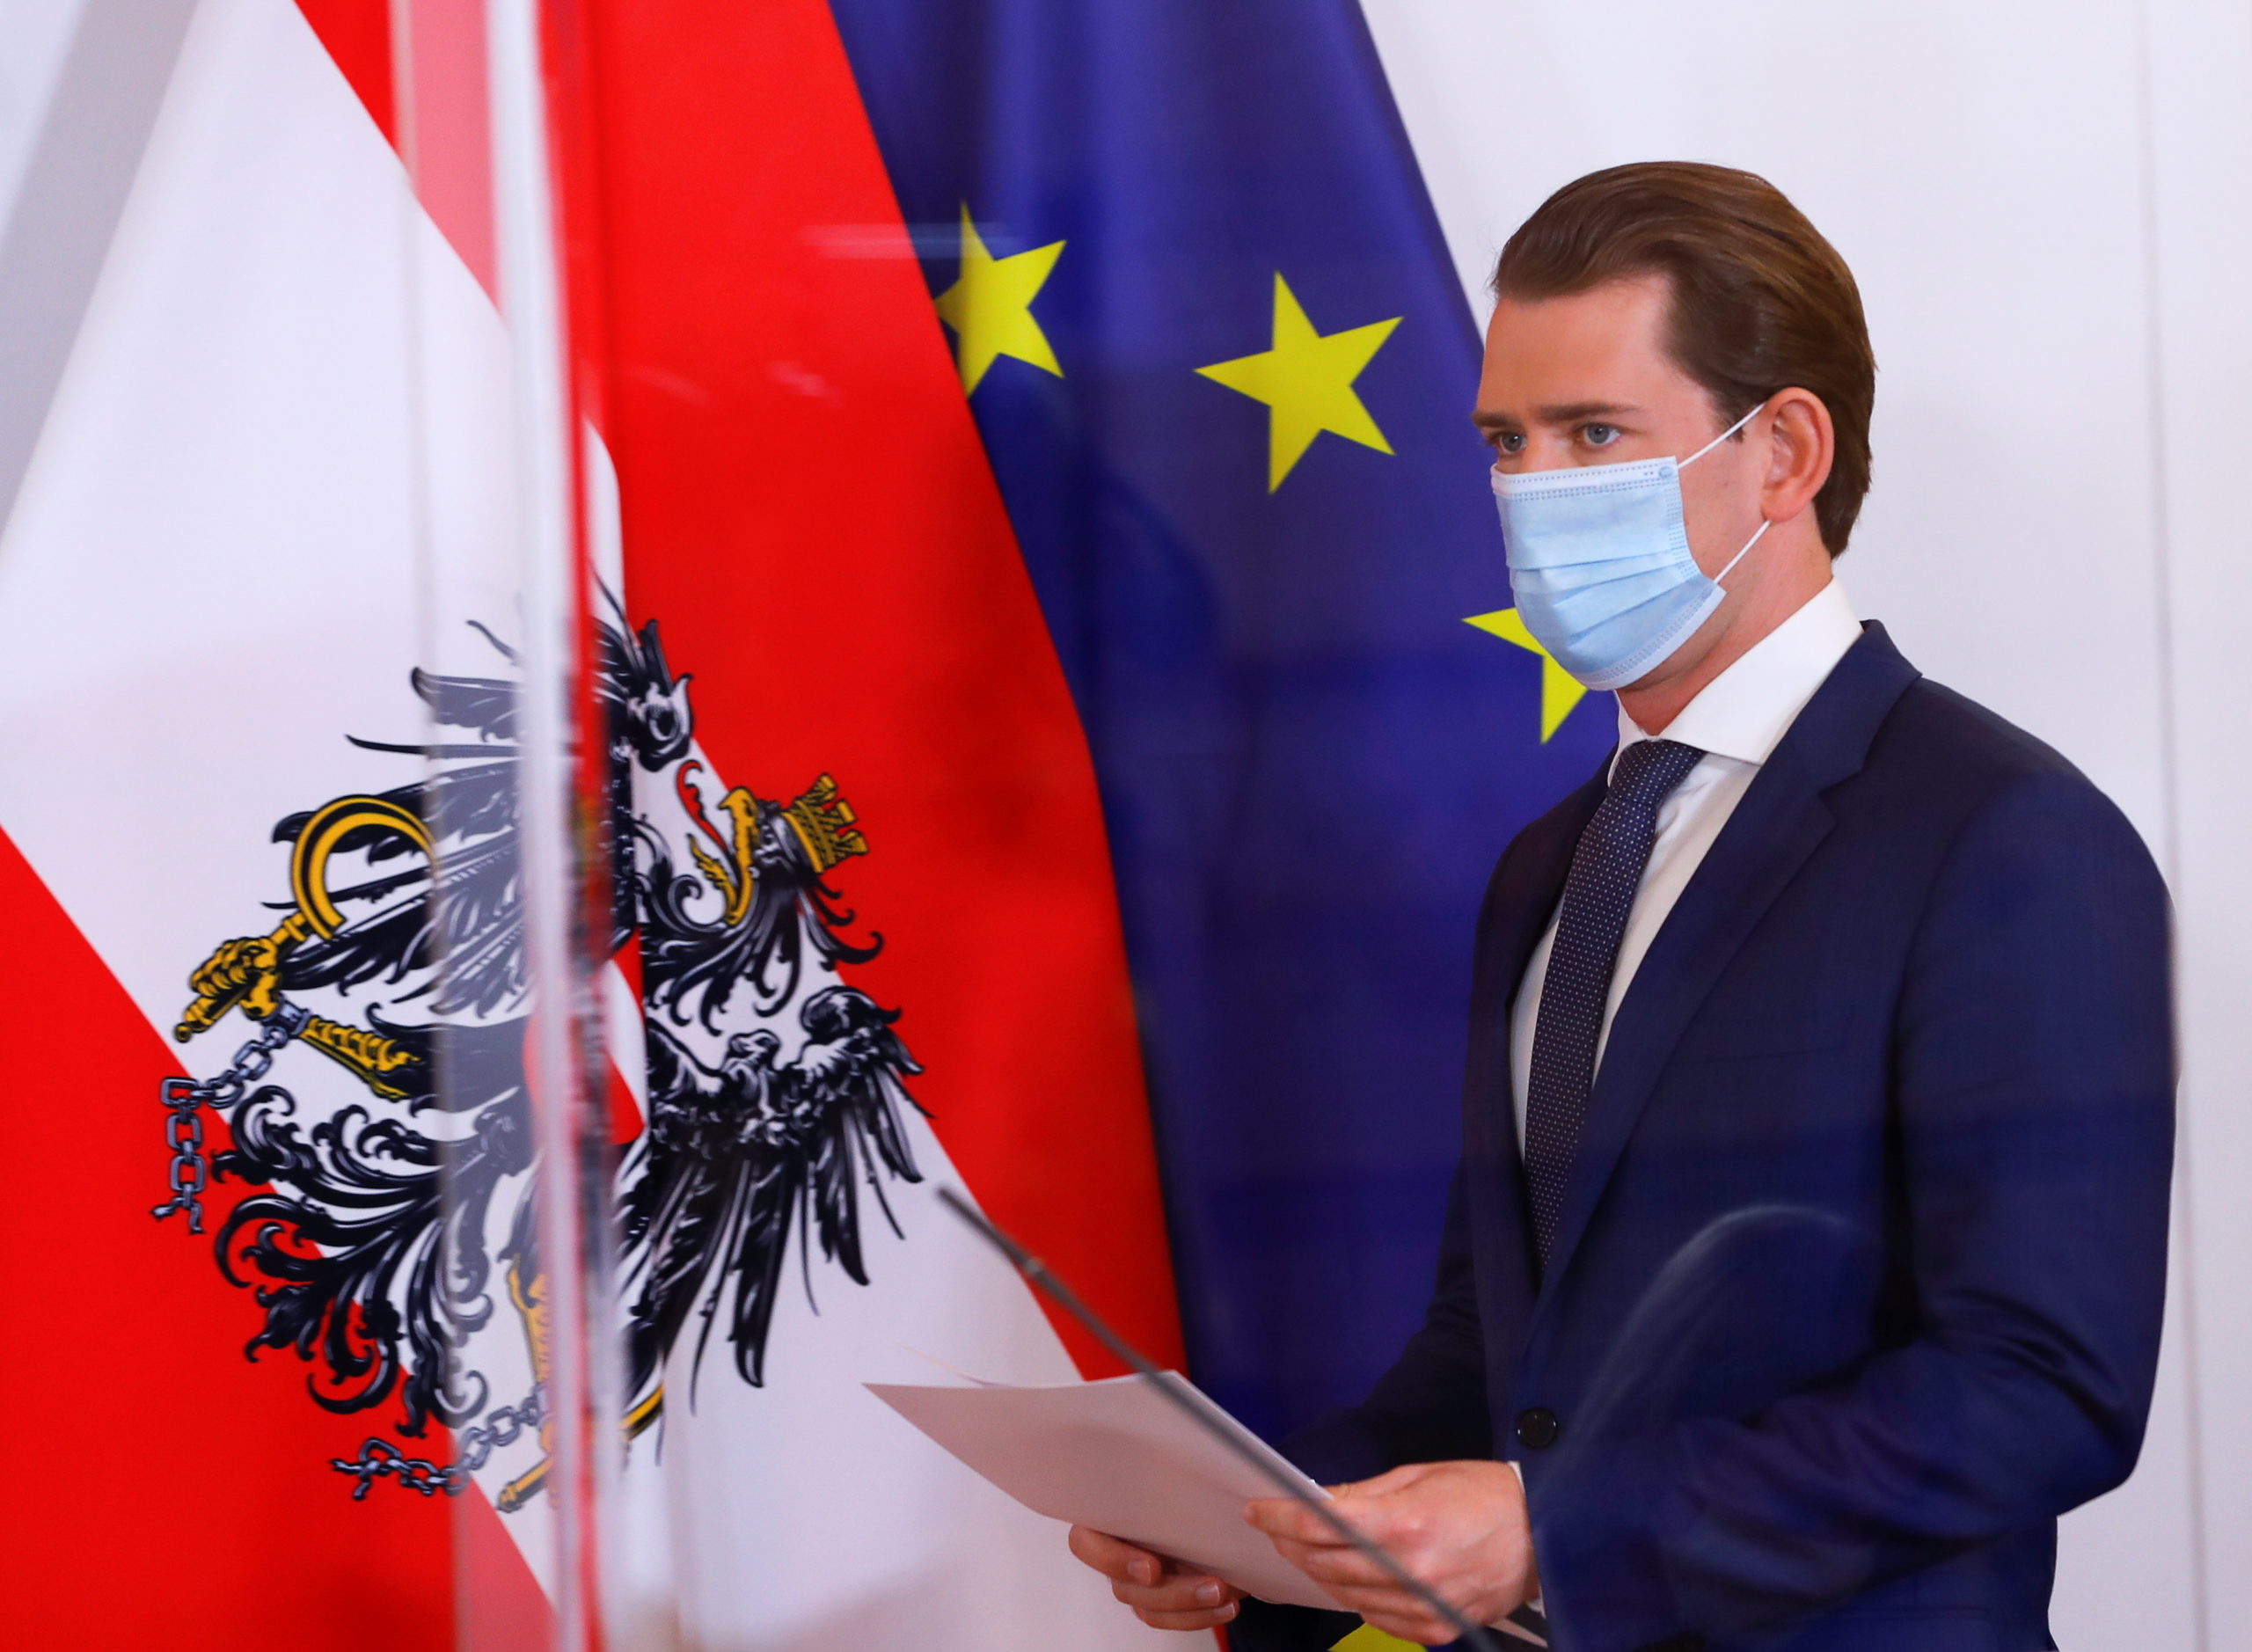 Coronavirus: L'Autriche instaure un couvre-feu et ferme les restaurants